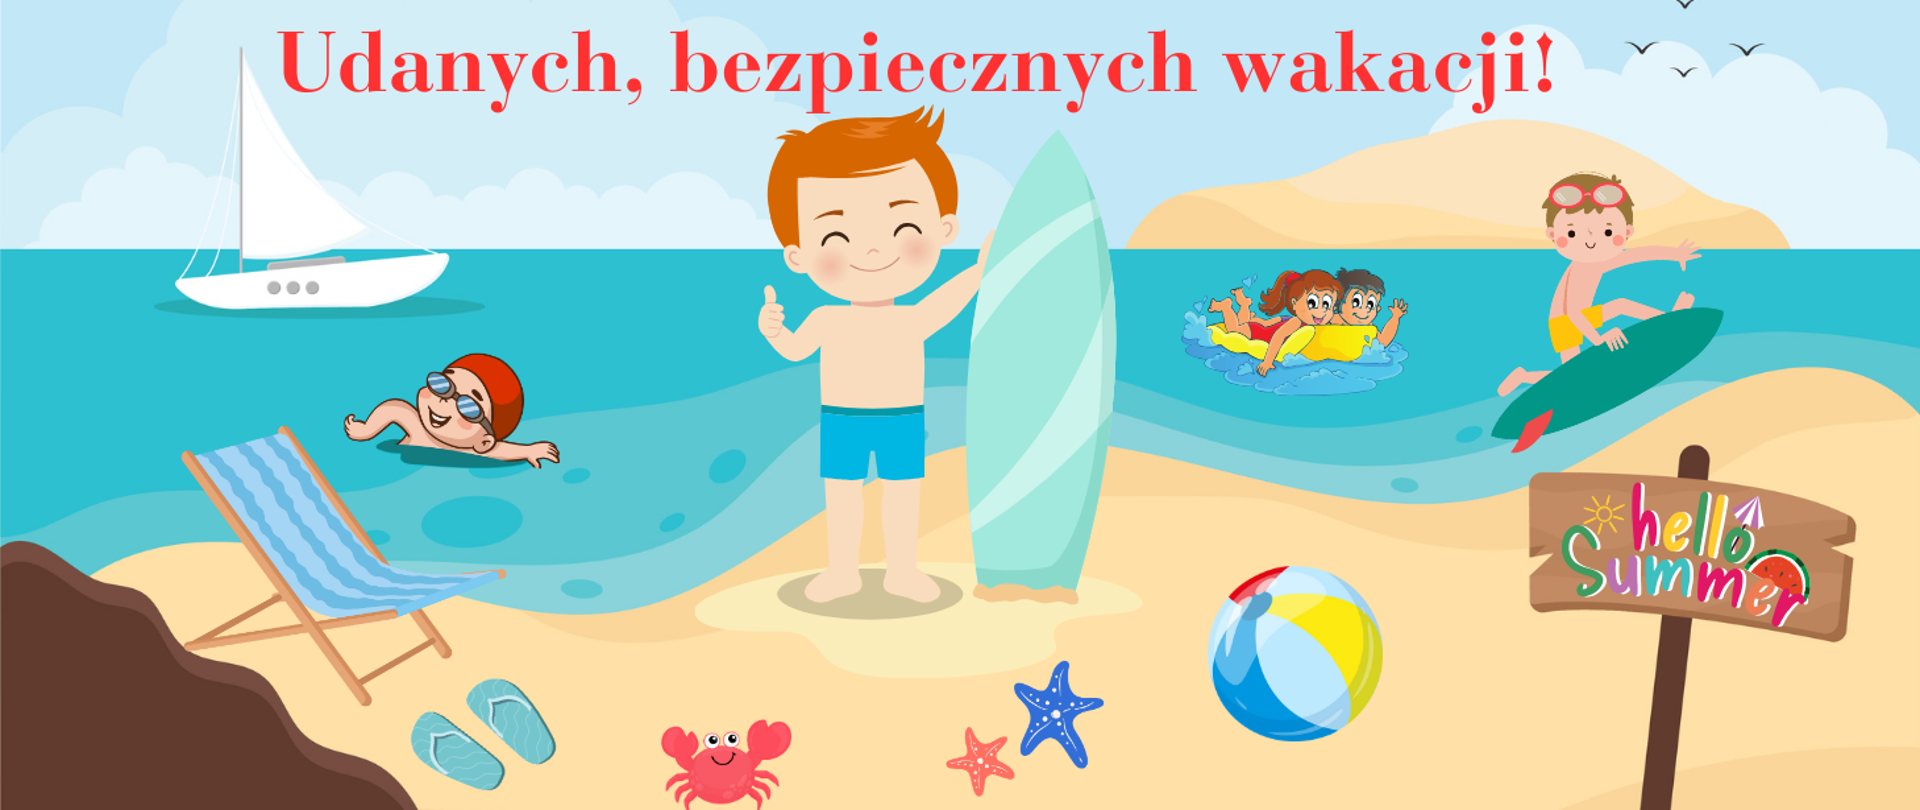 Grafika przedstawia kolorowy plakat wakacyjny z napisem "Udanych, bezpiecznych wakacji!